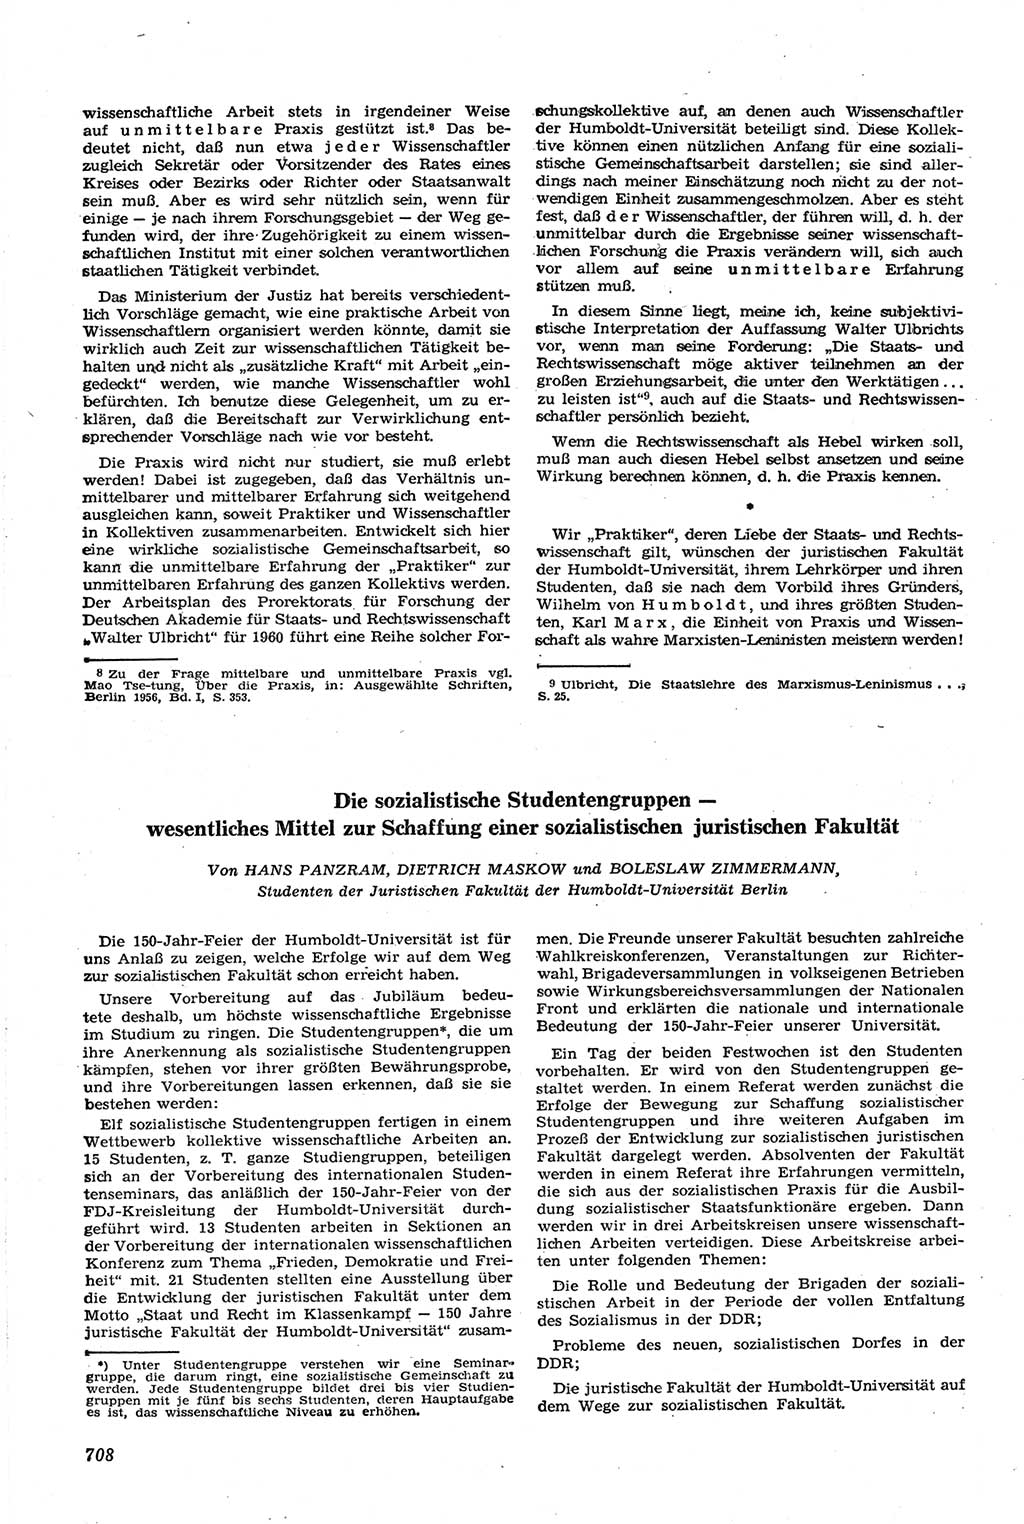 Neue Justiz (NJ), Zeitschrift für Recht und Rechtswissenschaft [Deutsche Demokratische Republik (DDR)], 14. Jahrgang 1960, Seite 708 (NJ DDR 1960, S. 708)